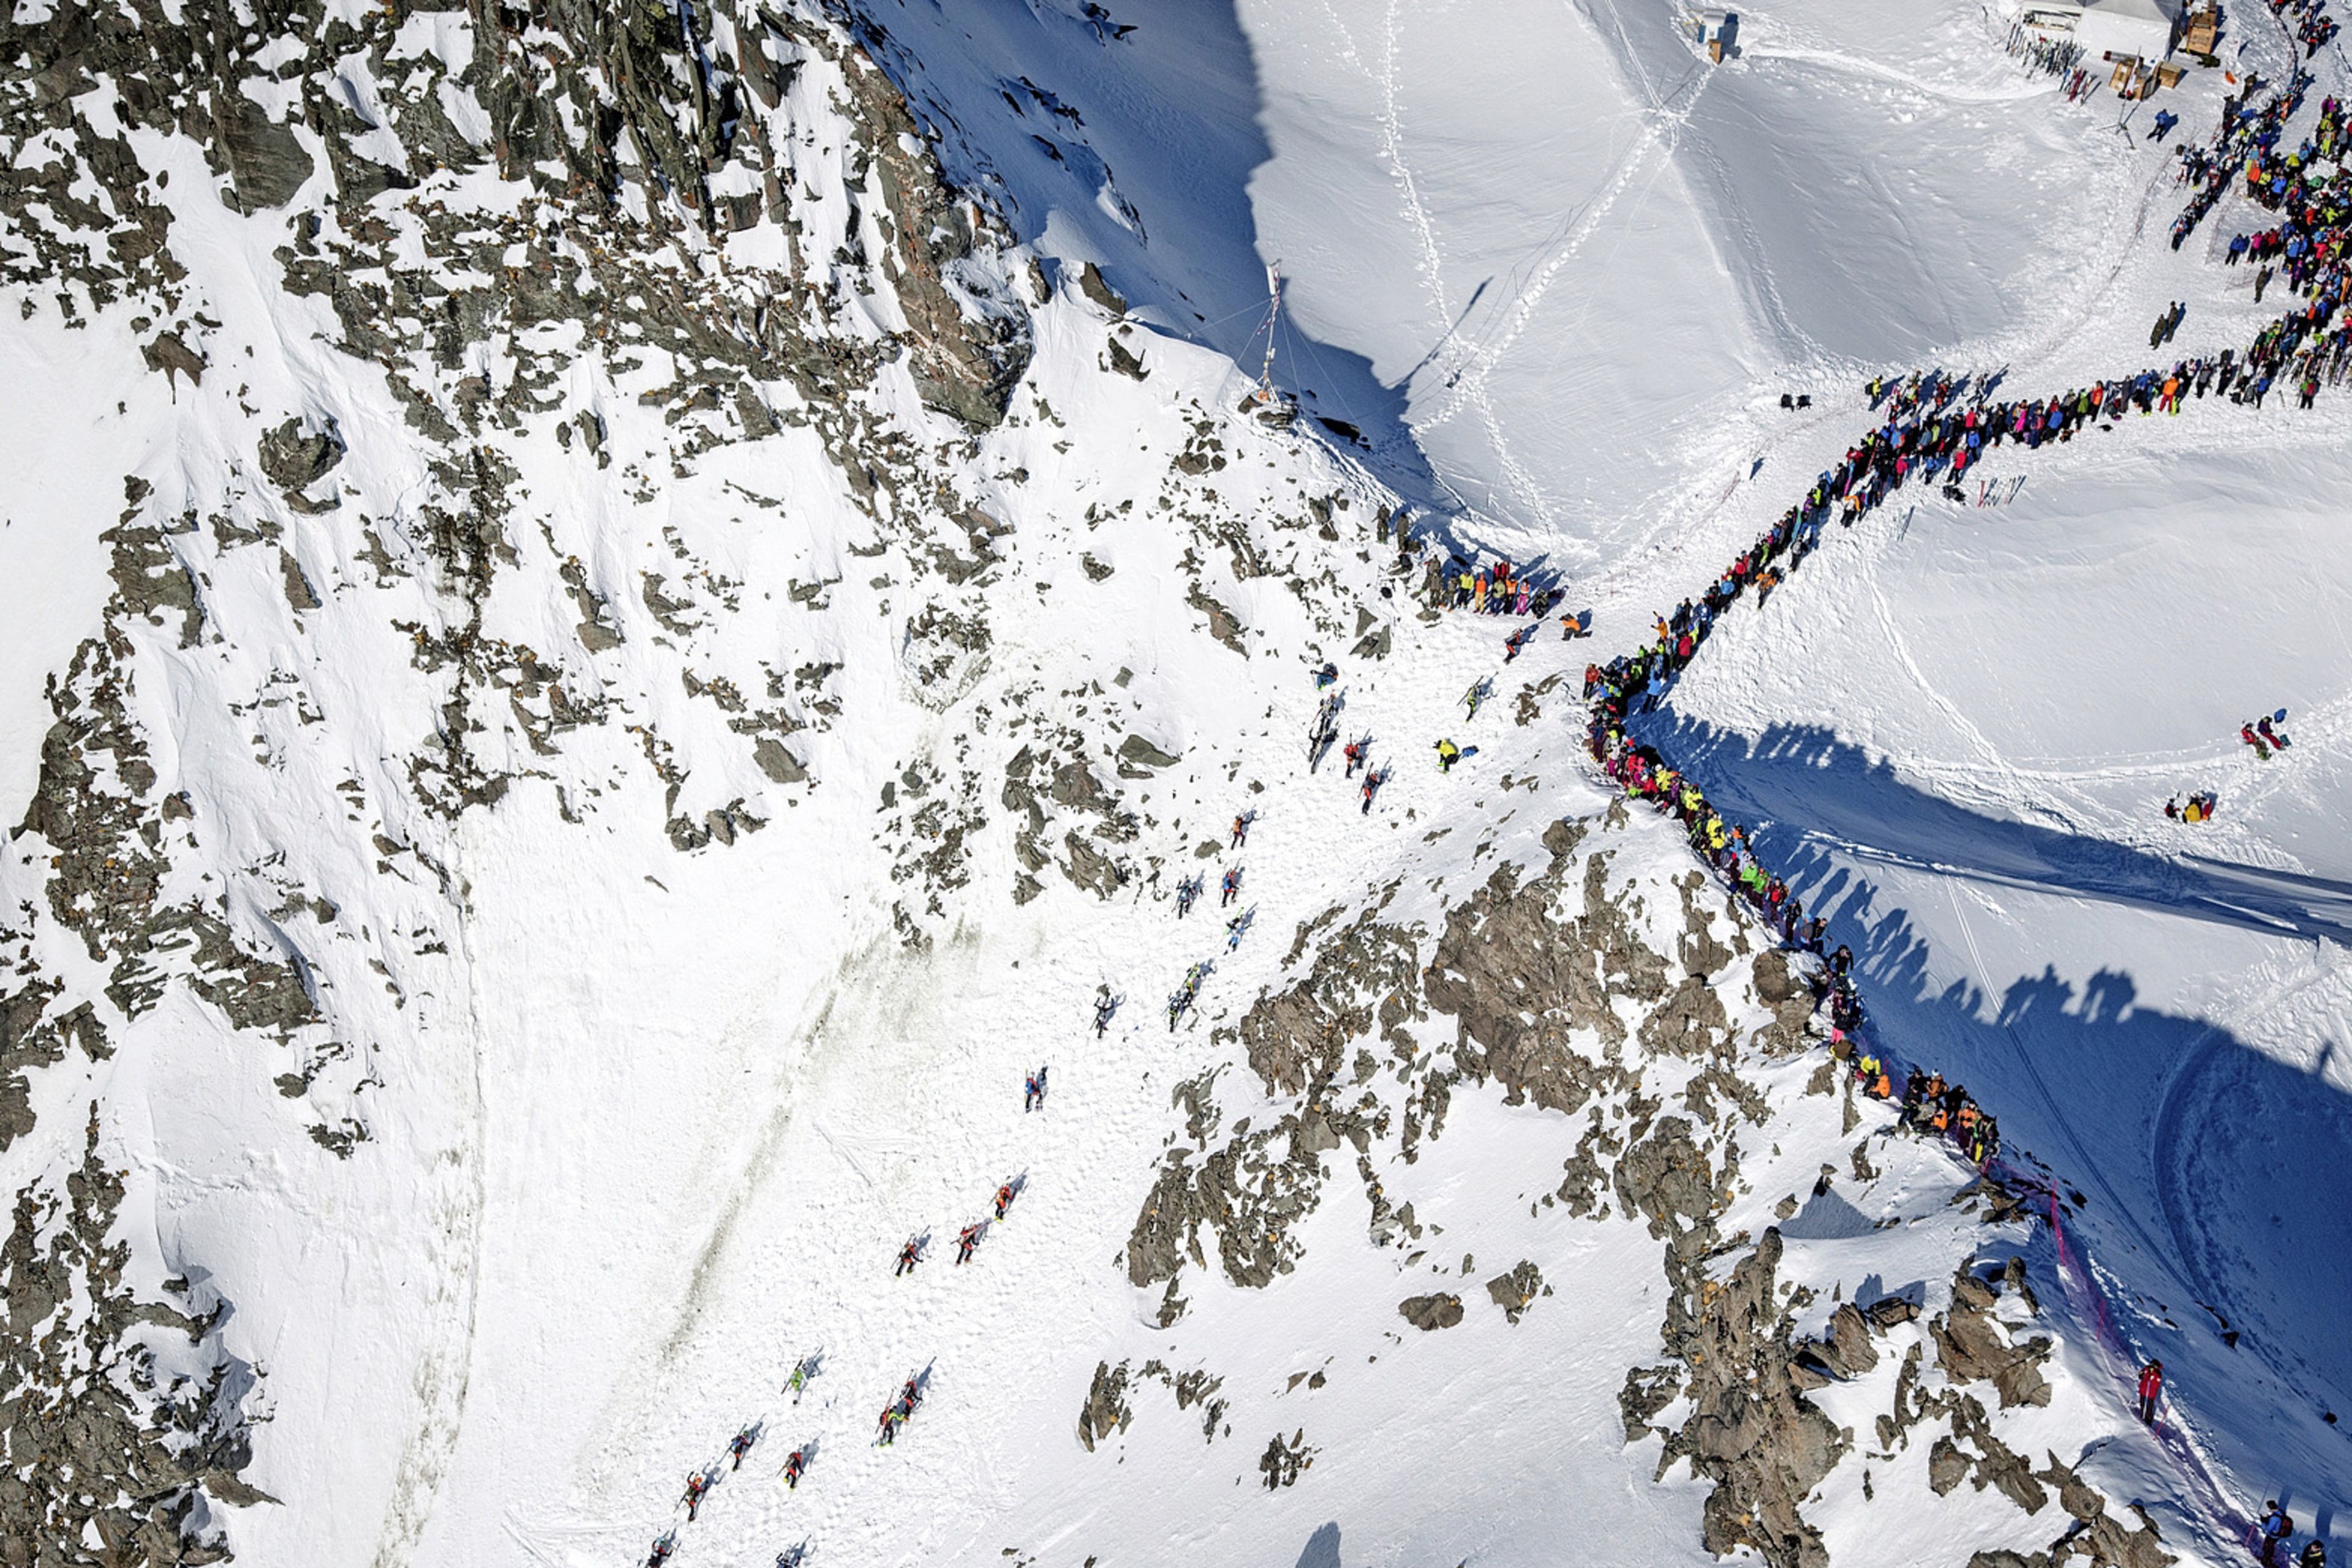 Zuschauerreihe, PDG, Zermatt, Verbier, Skitour, Valais, Wallis